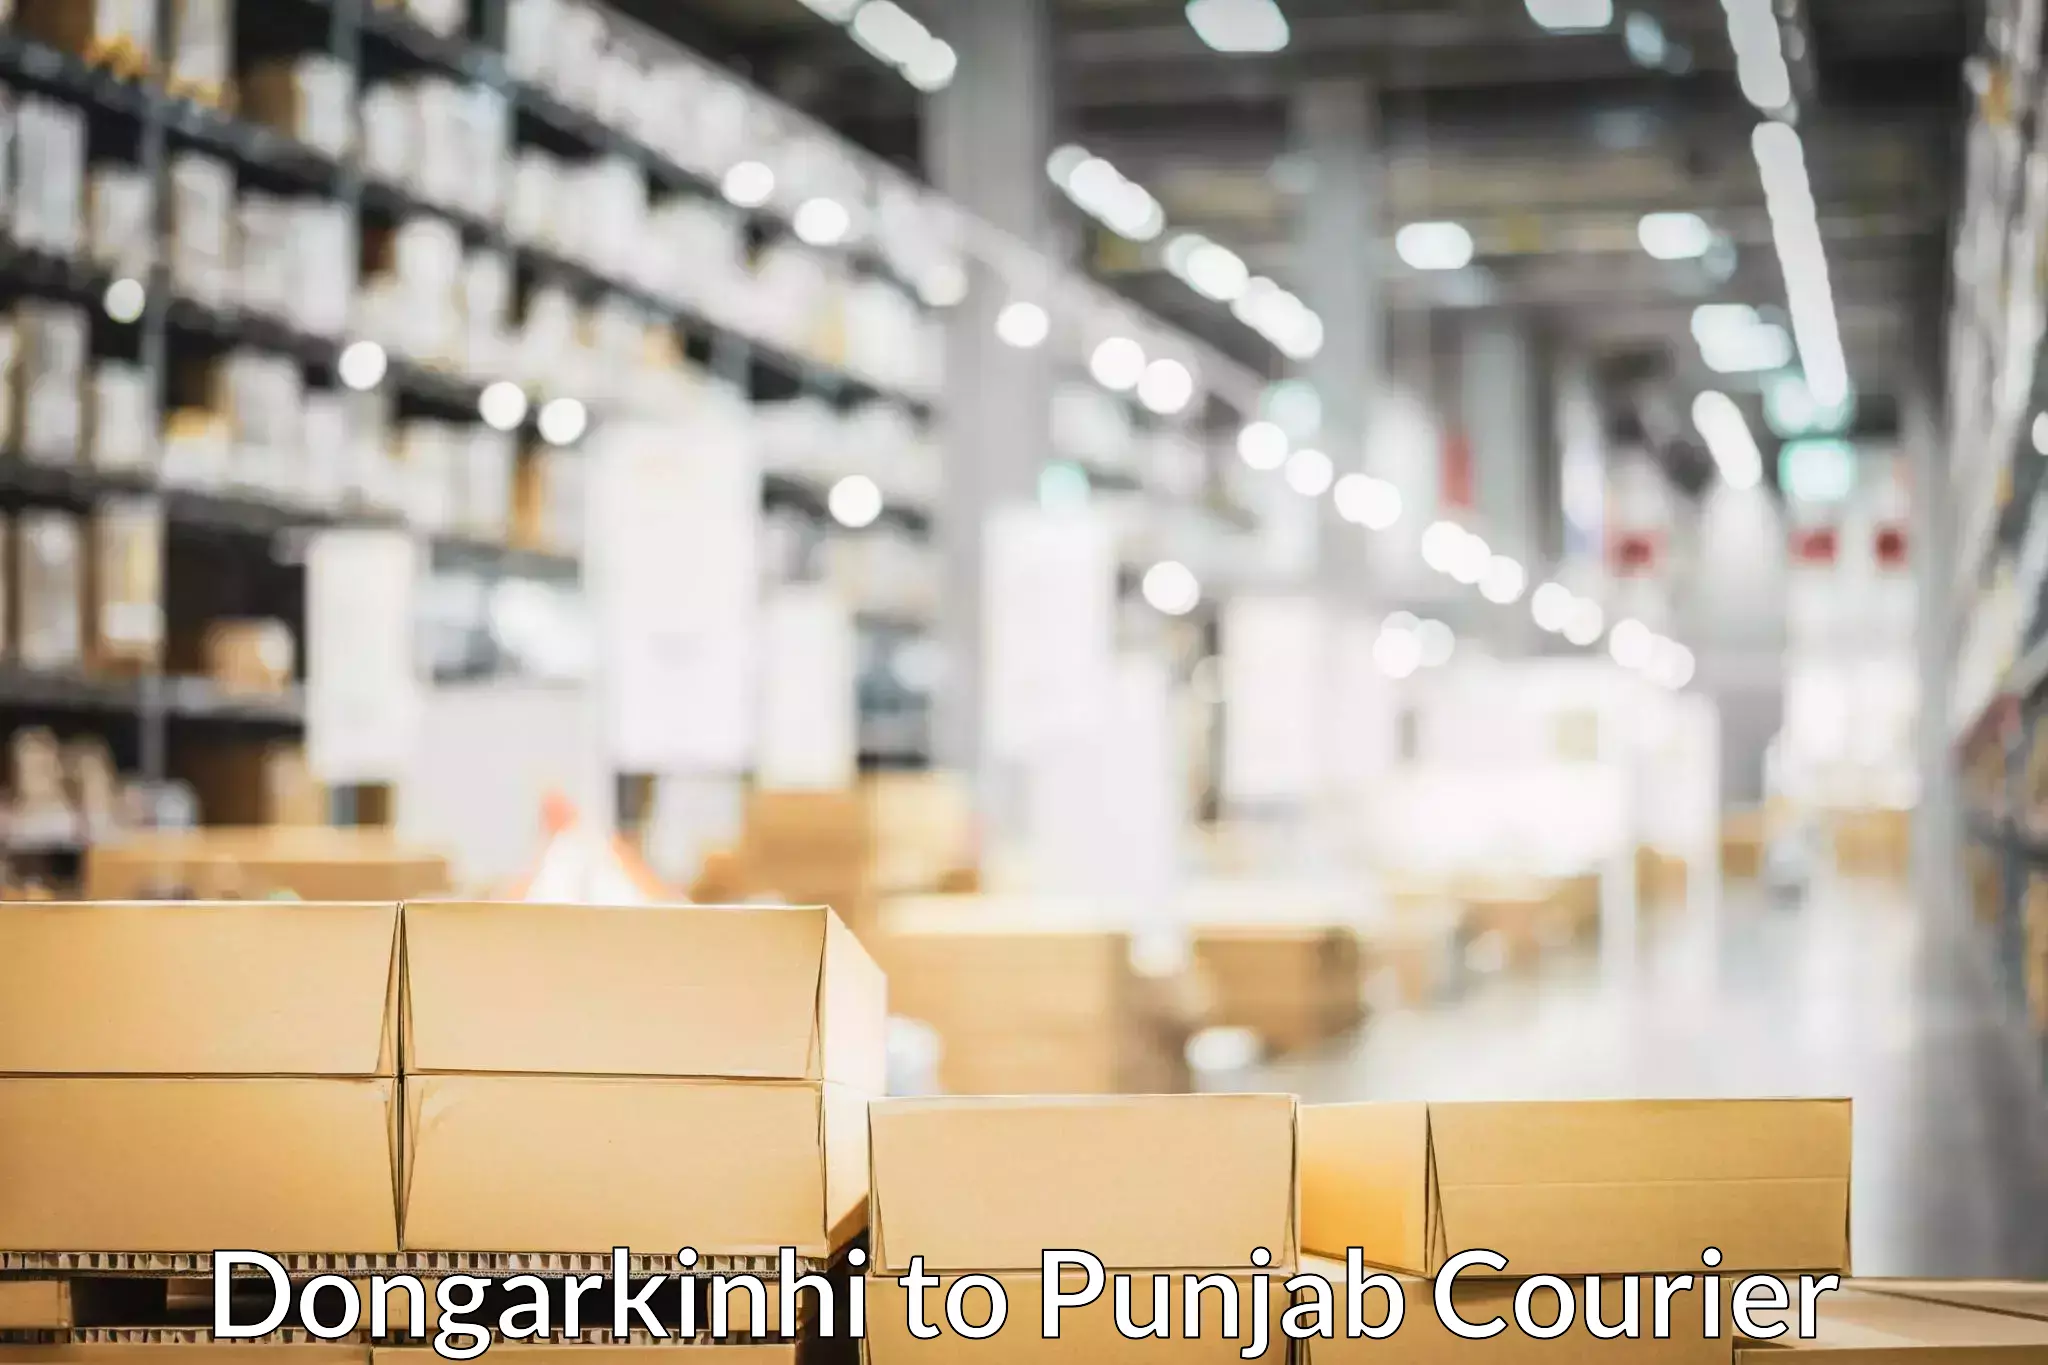 Residential furniture movers Dongarkinhi to Punjab